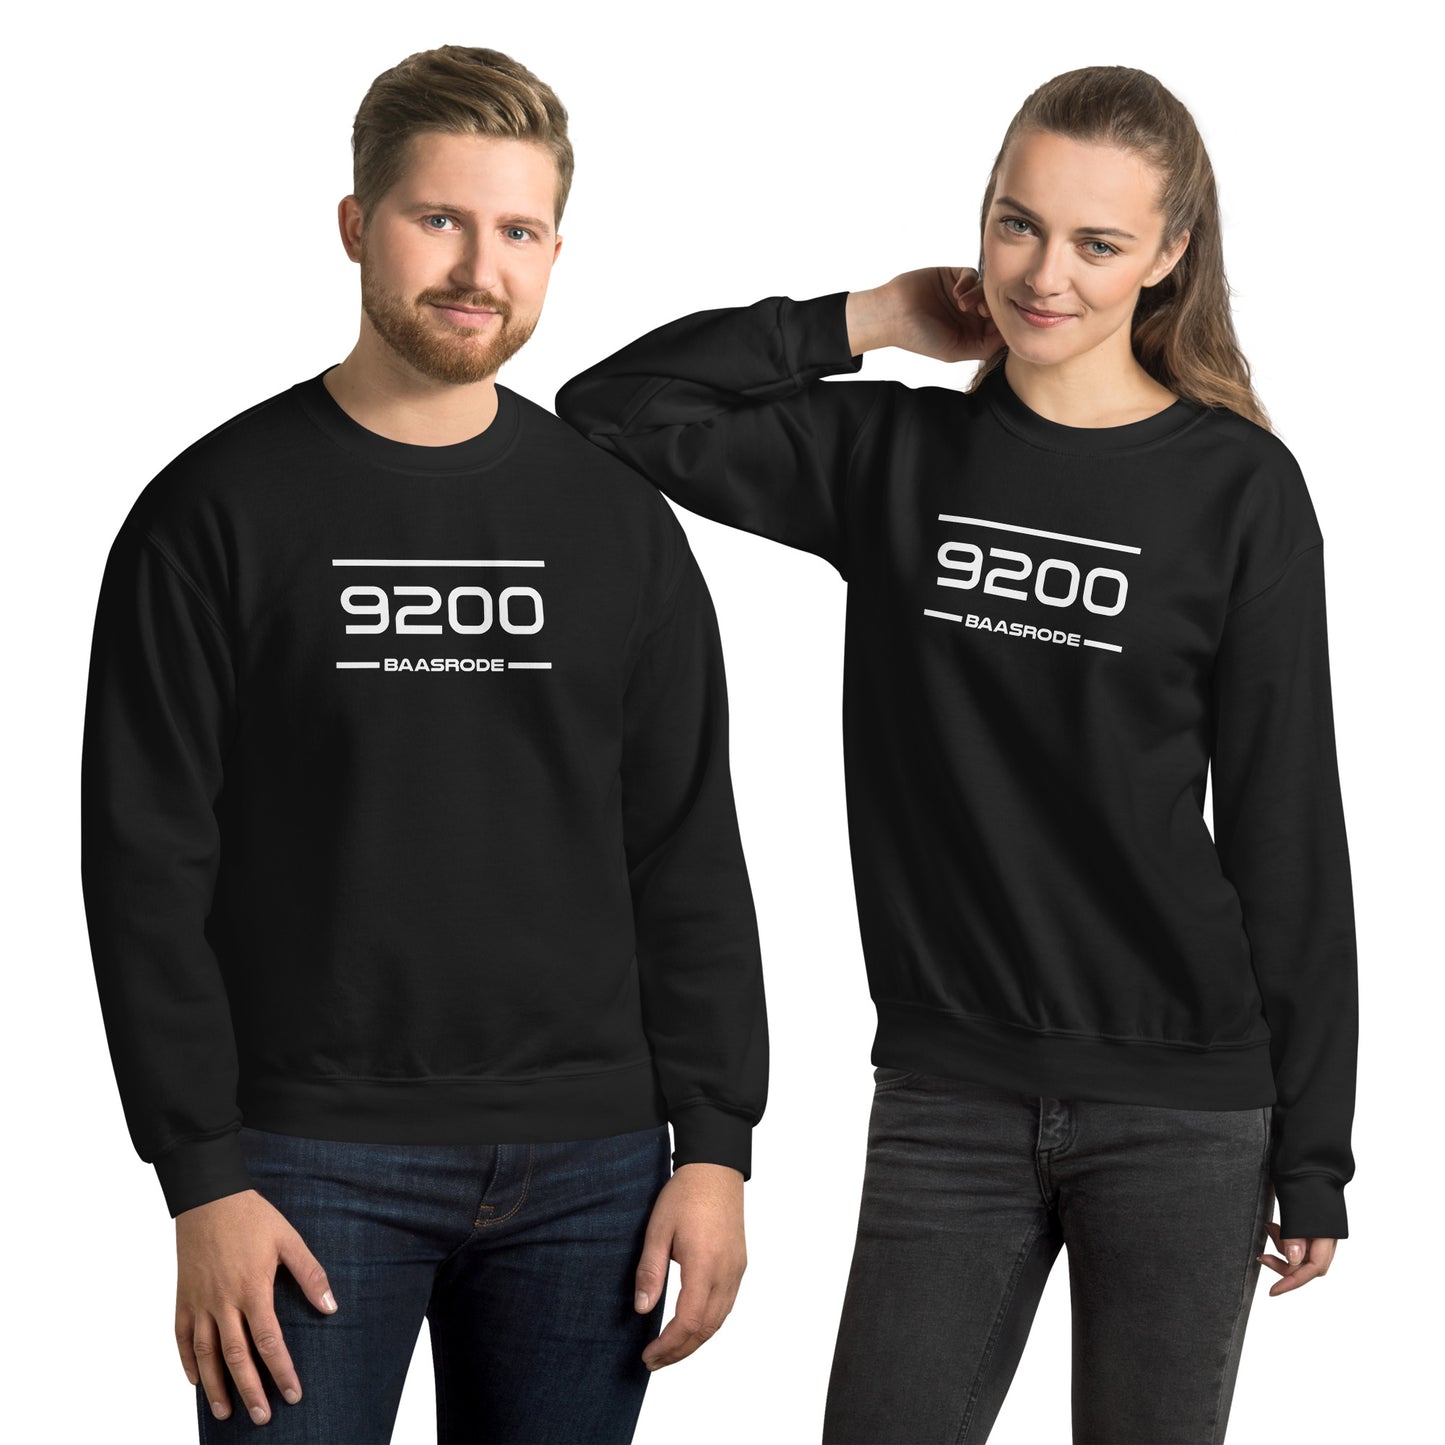 Sweater - 9200 - Baasrode (M/V)